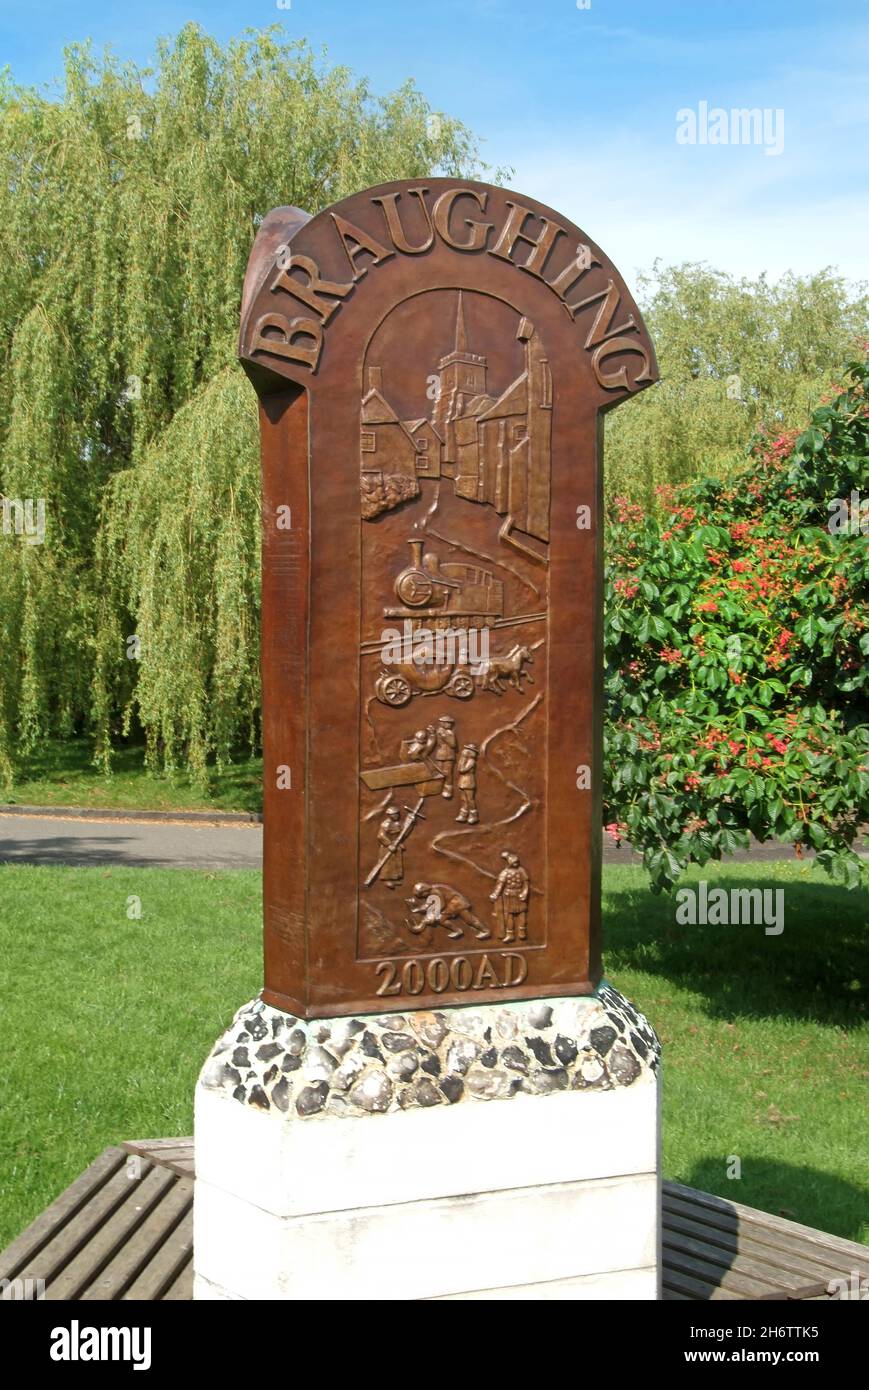 Signe inhabituel de communauté rurale Brauauth monté sur plinthe sur le petit village vert avec des sculptures de caractéristiques historiques locales Hertfordshire Angleterre Royaume-Uni Banque D'Images